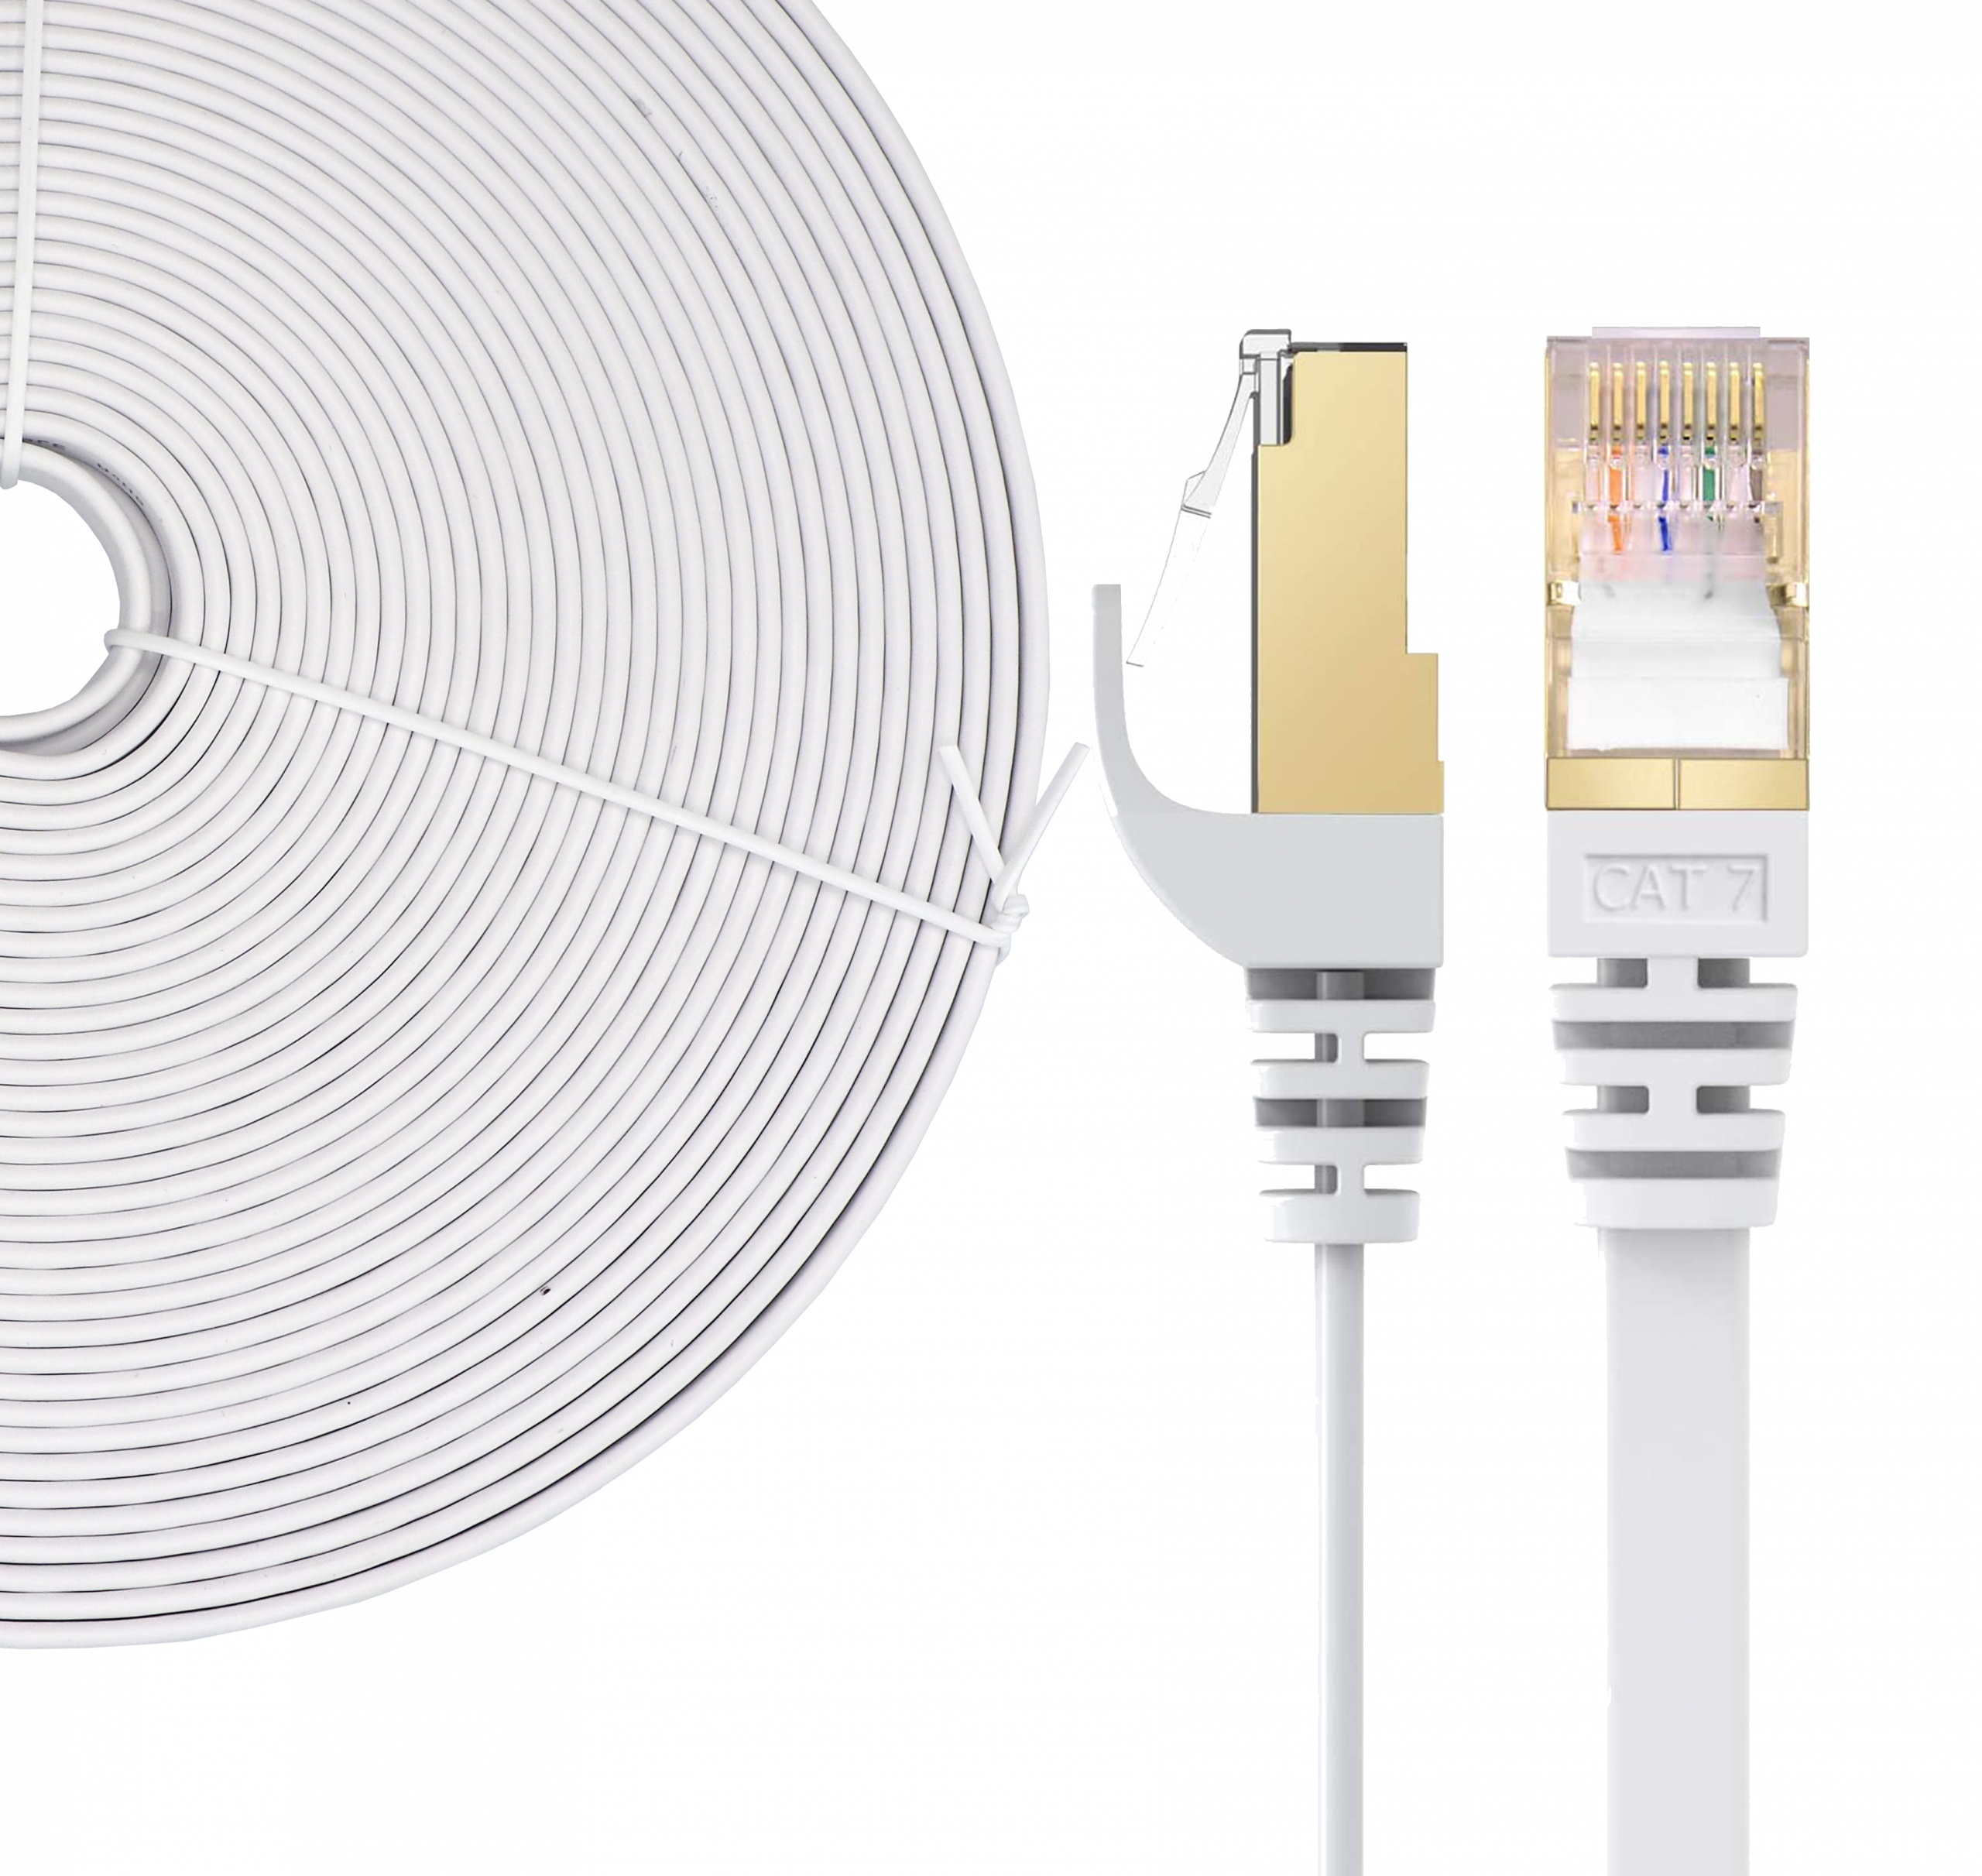 Guide de câblage Ethernet par Eltima